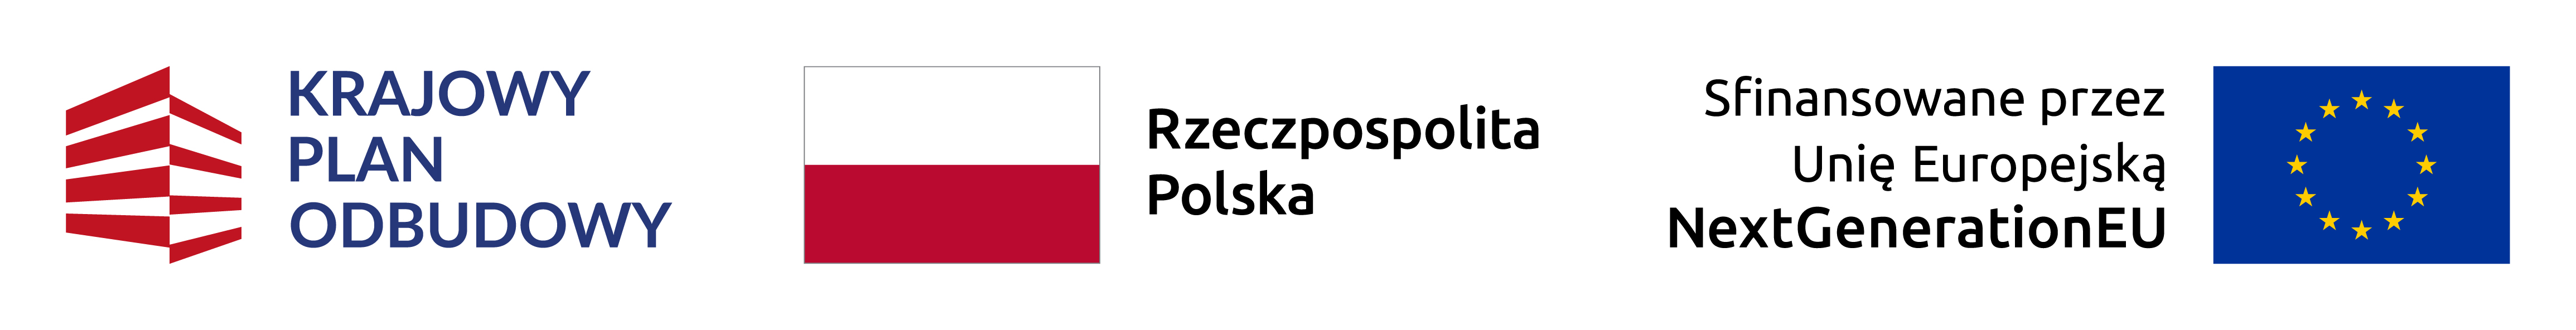 belka z 3 znakami Krajowy Plan Odbudowy, Rzeczpospolita Polska, Sfinansowane przez UE